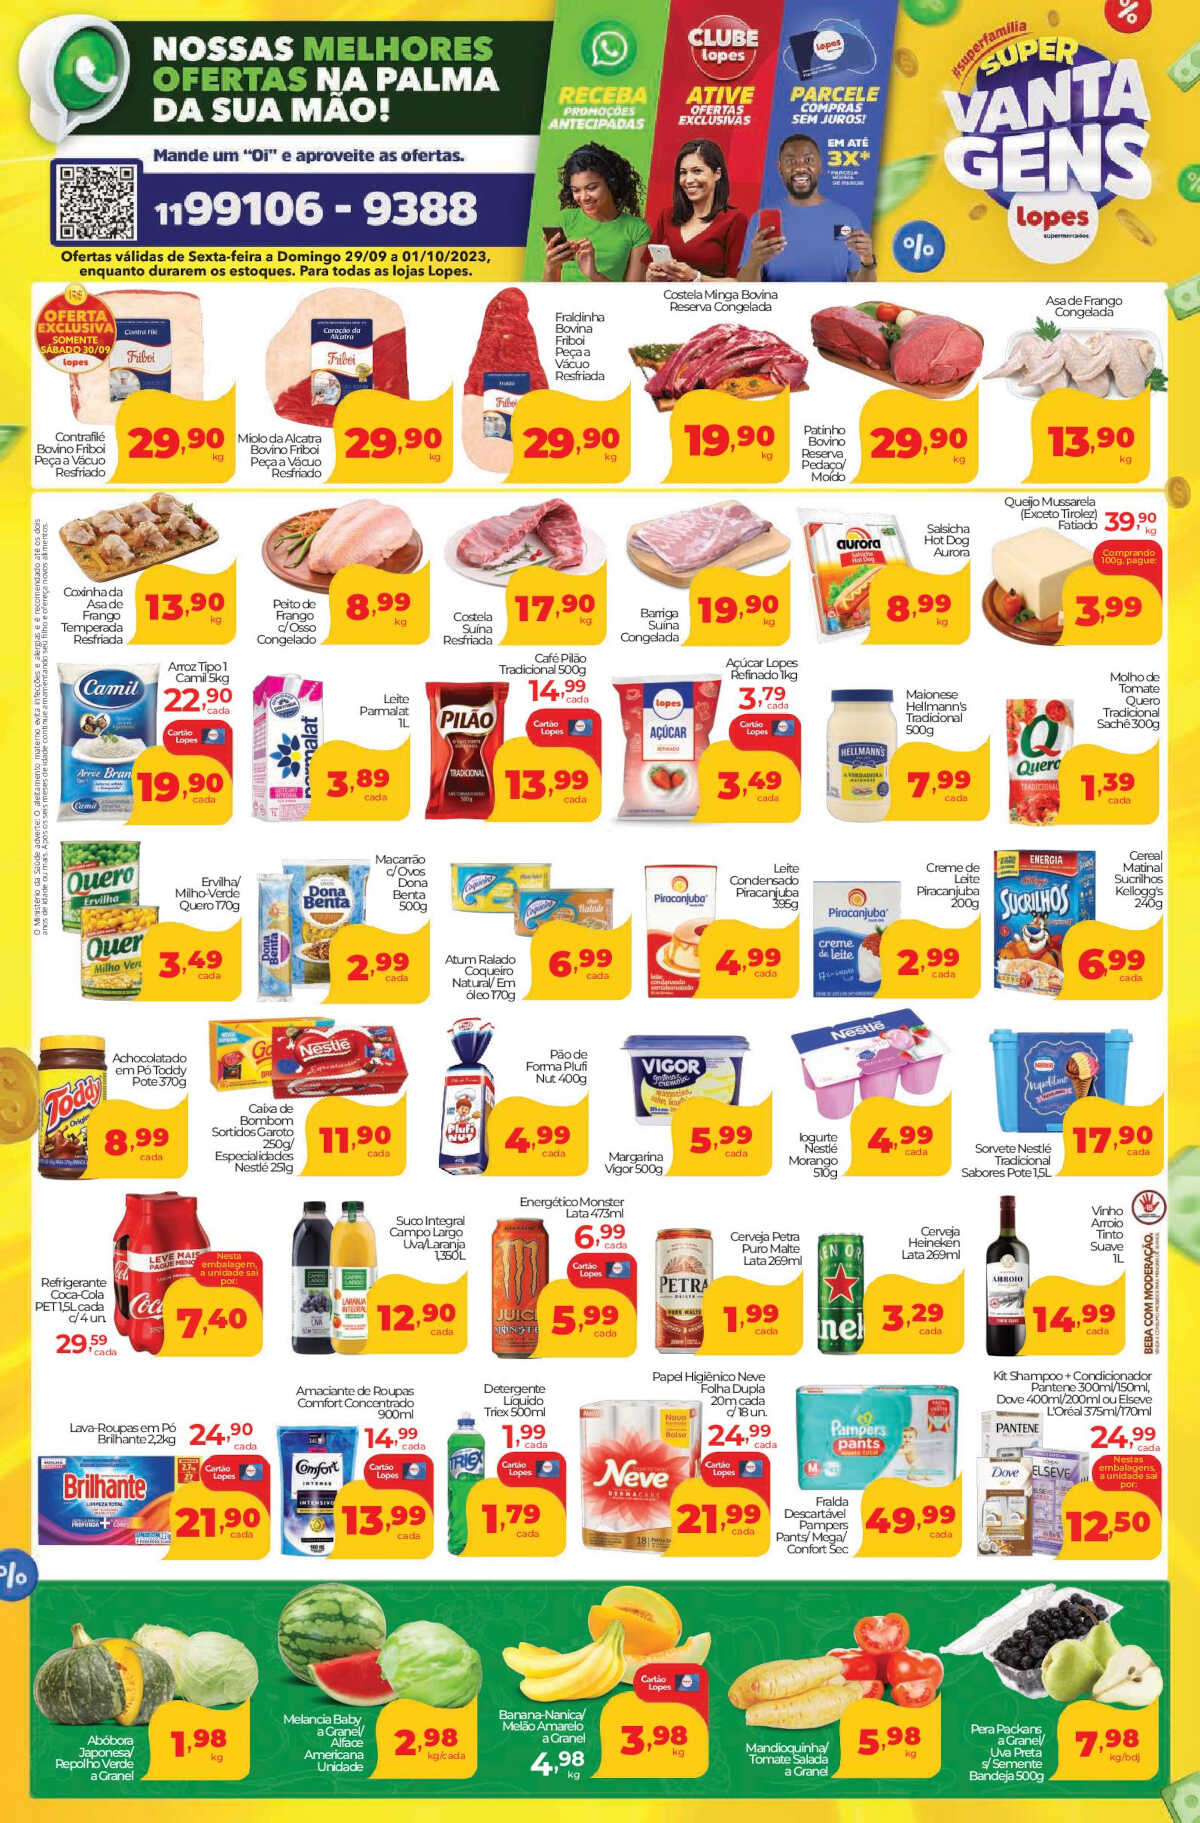 Ofertas Lopes Supermercados até 05/10